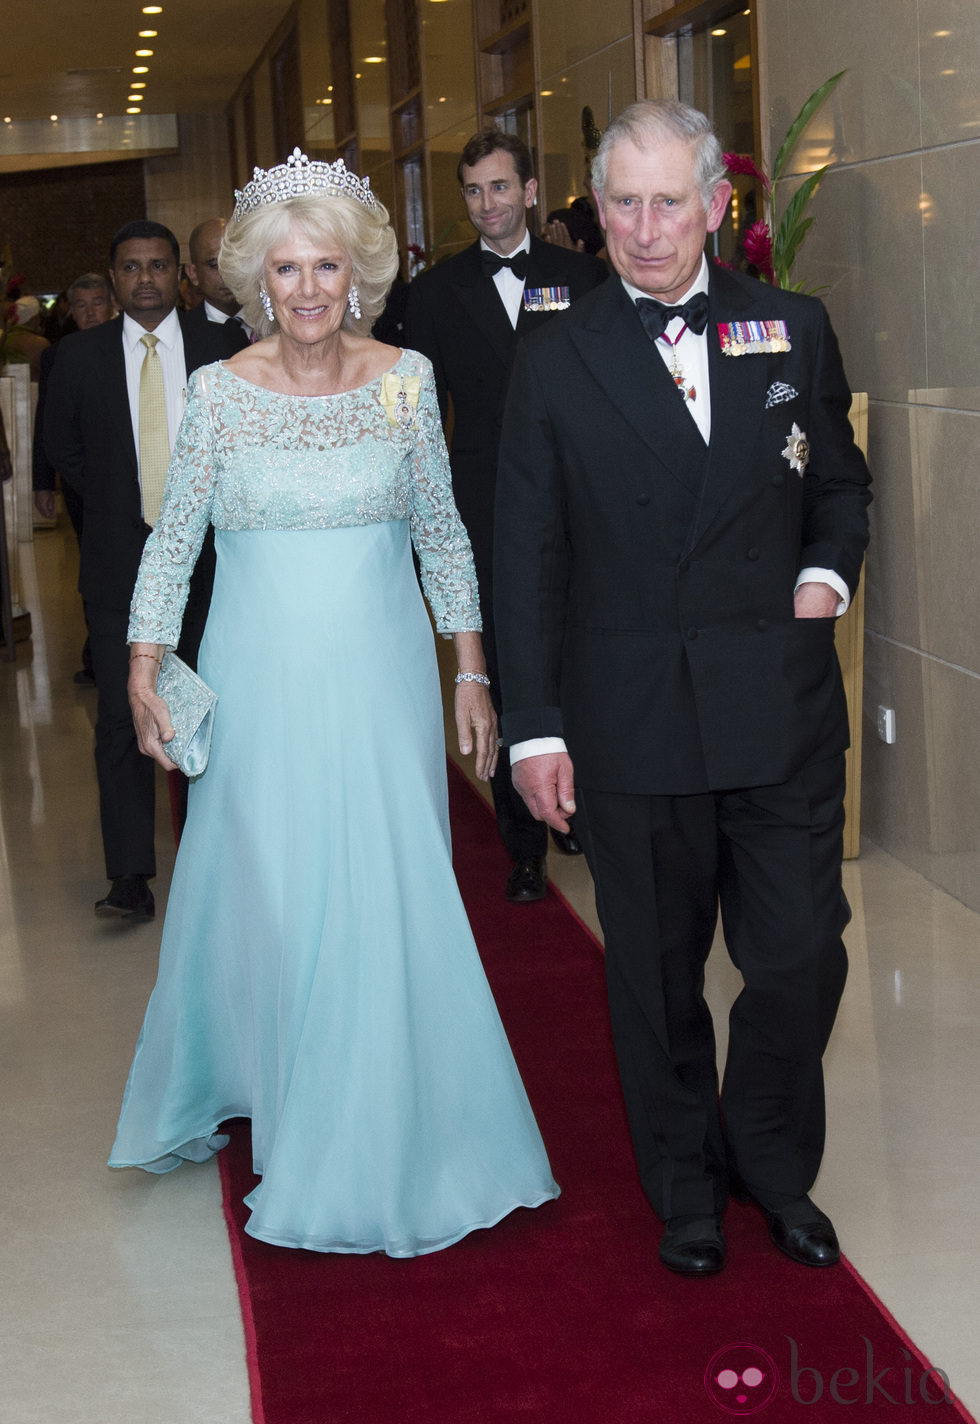 El Príncipe Carlos y la Duquesa de Cornualles en la cena de gala celebrada en su viaje oficial a Sri Lanka